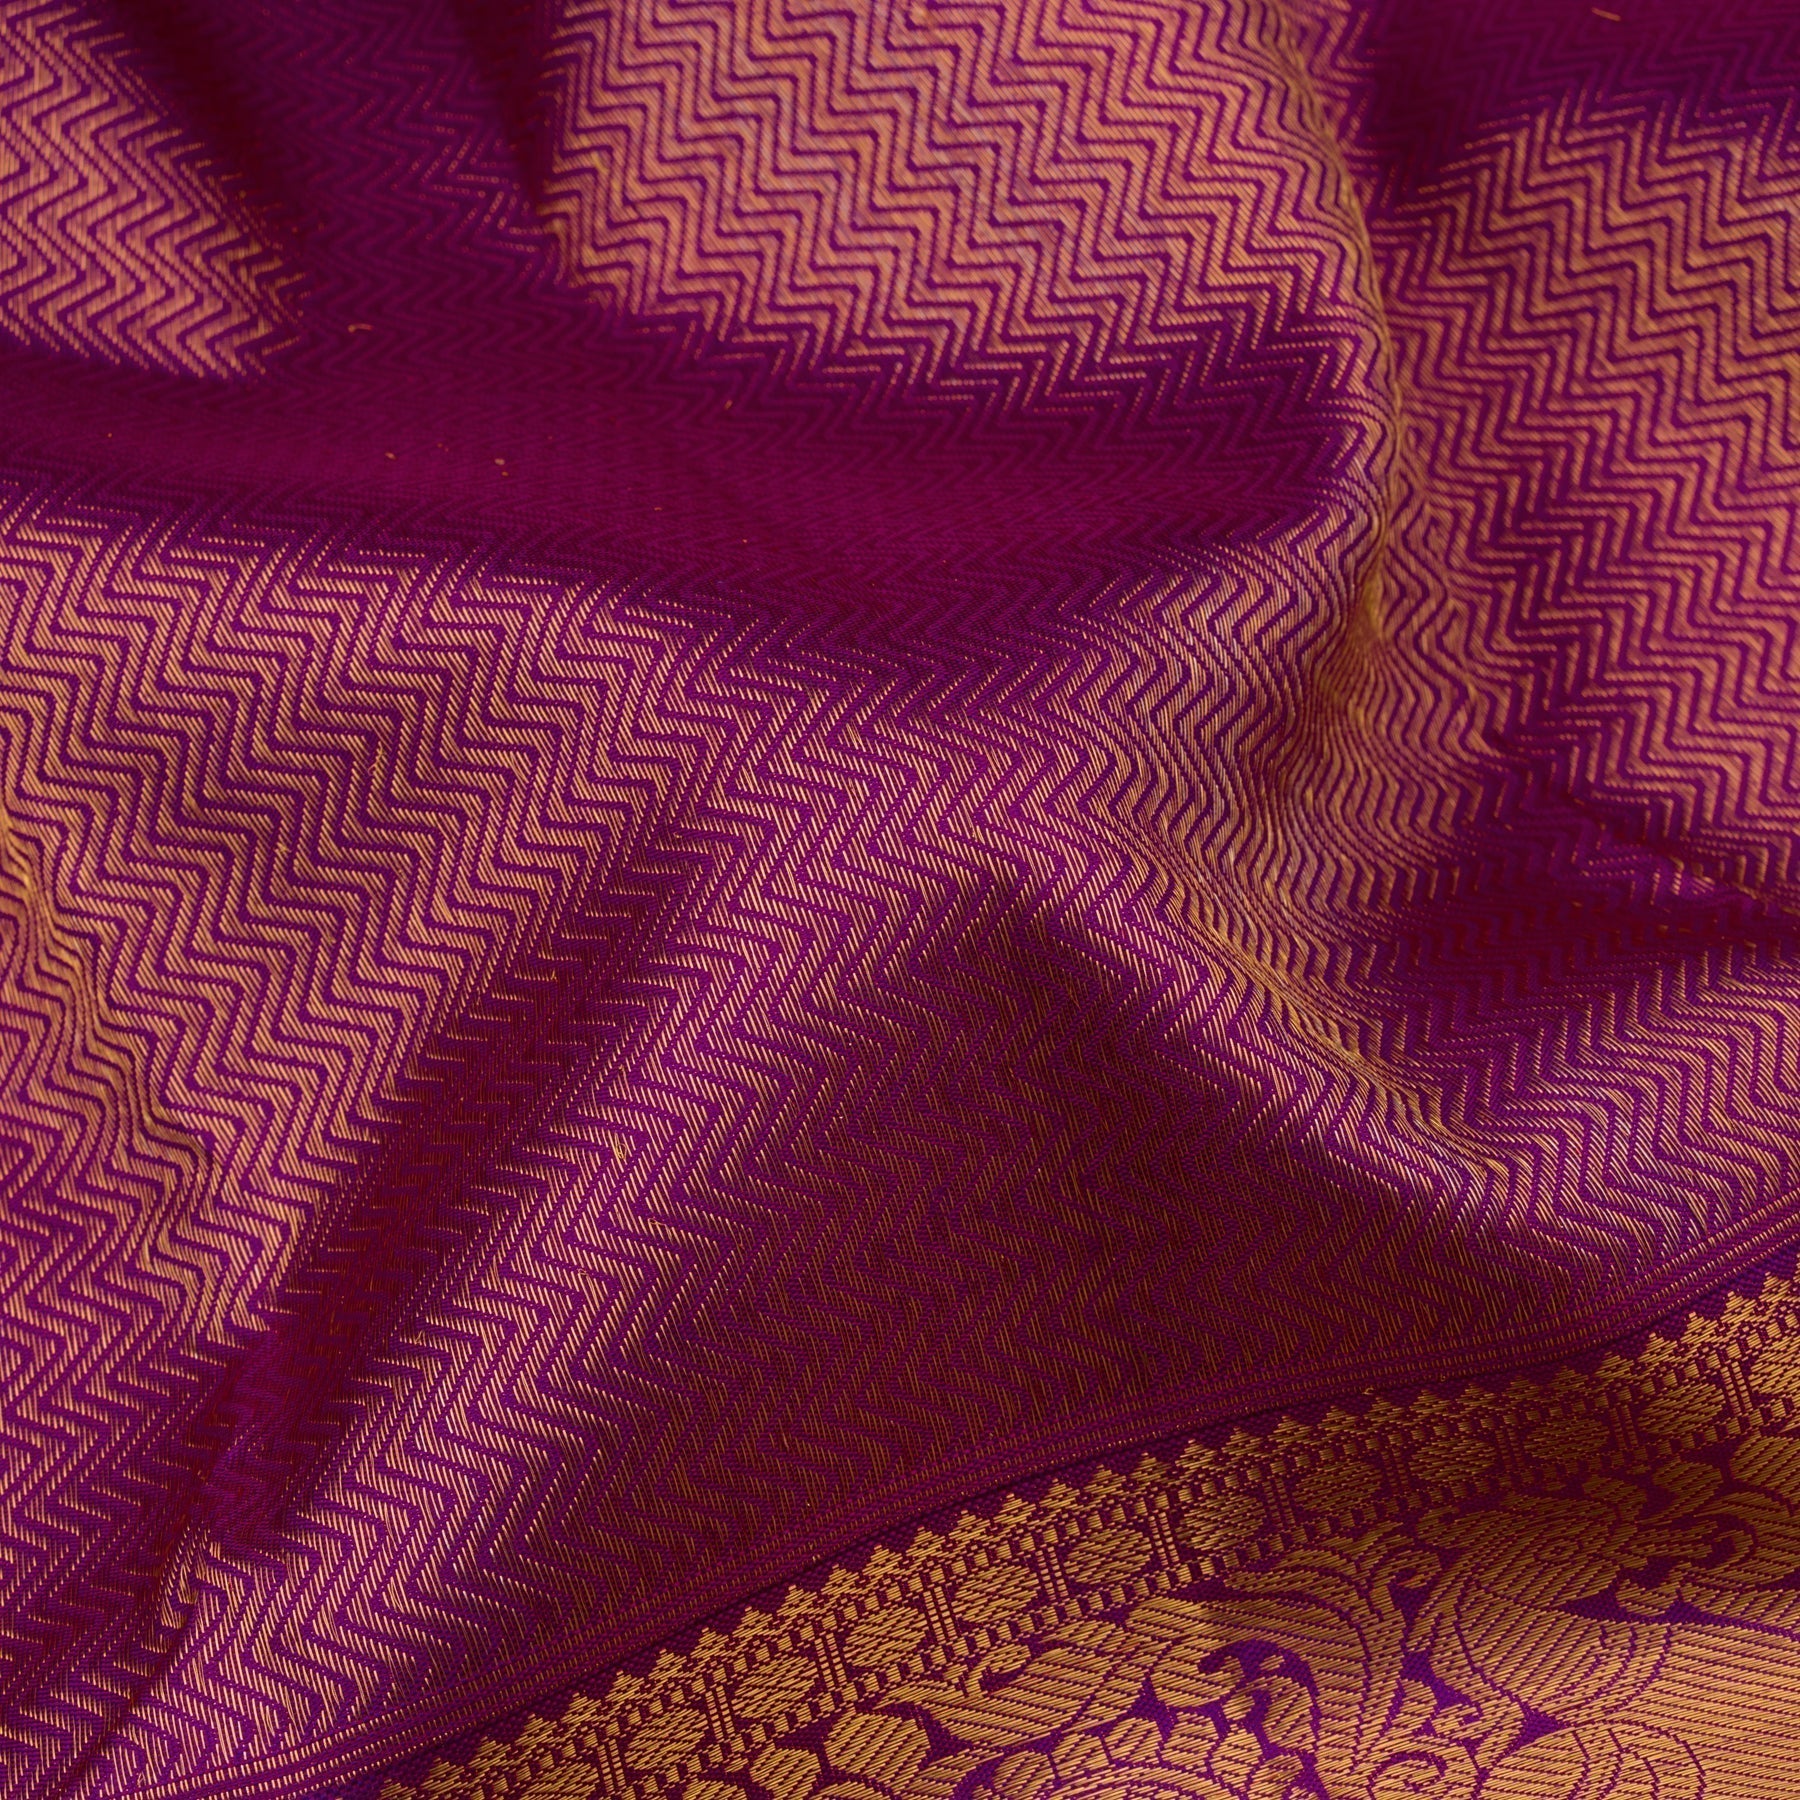 Kanakavalli Kanjivaram Silk Sari 22-110-HS001-10555 - Fabric View